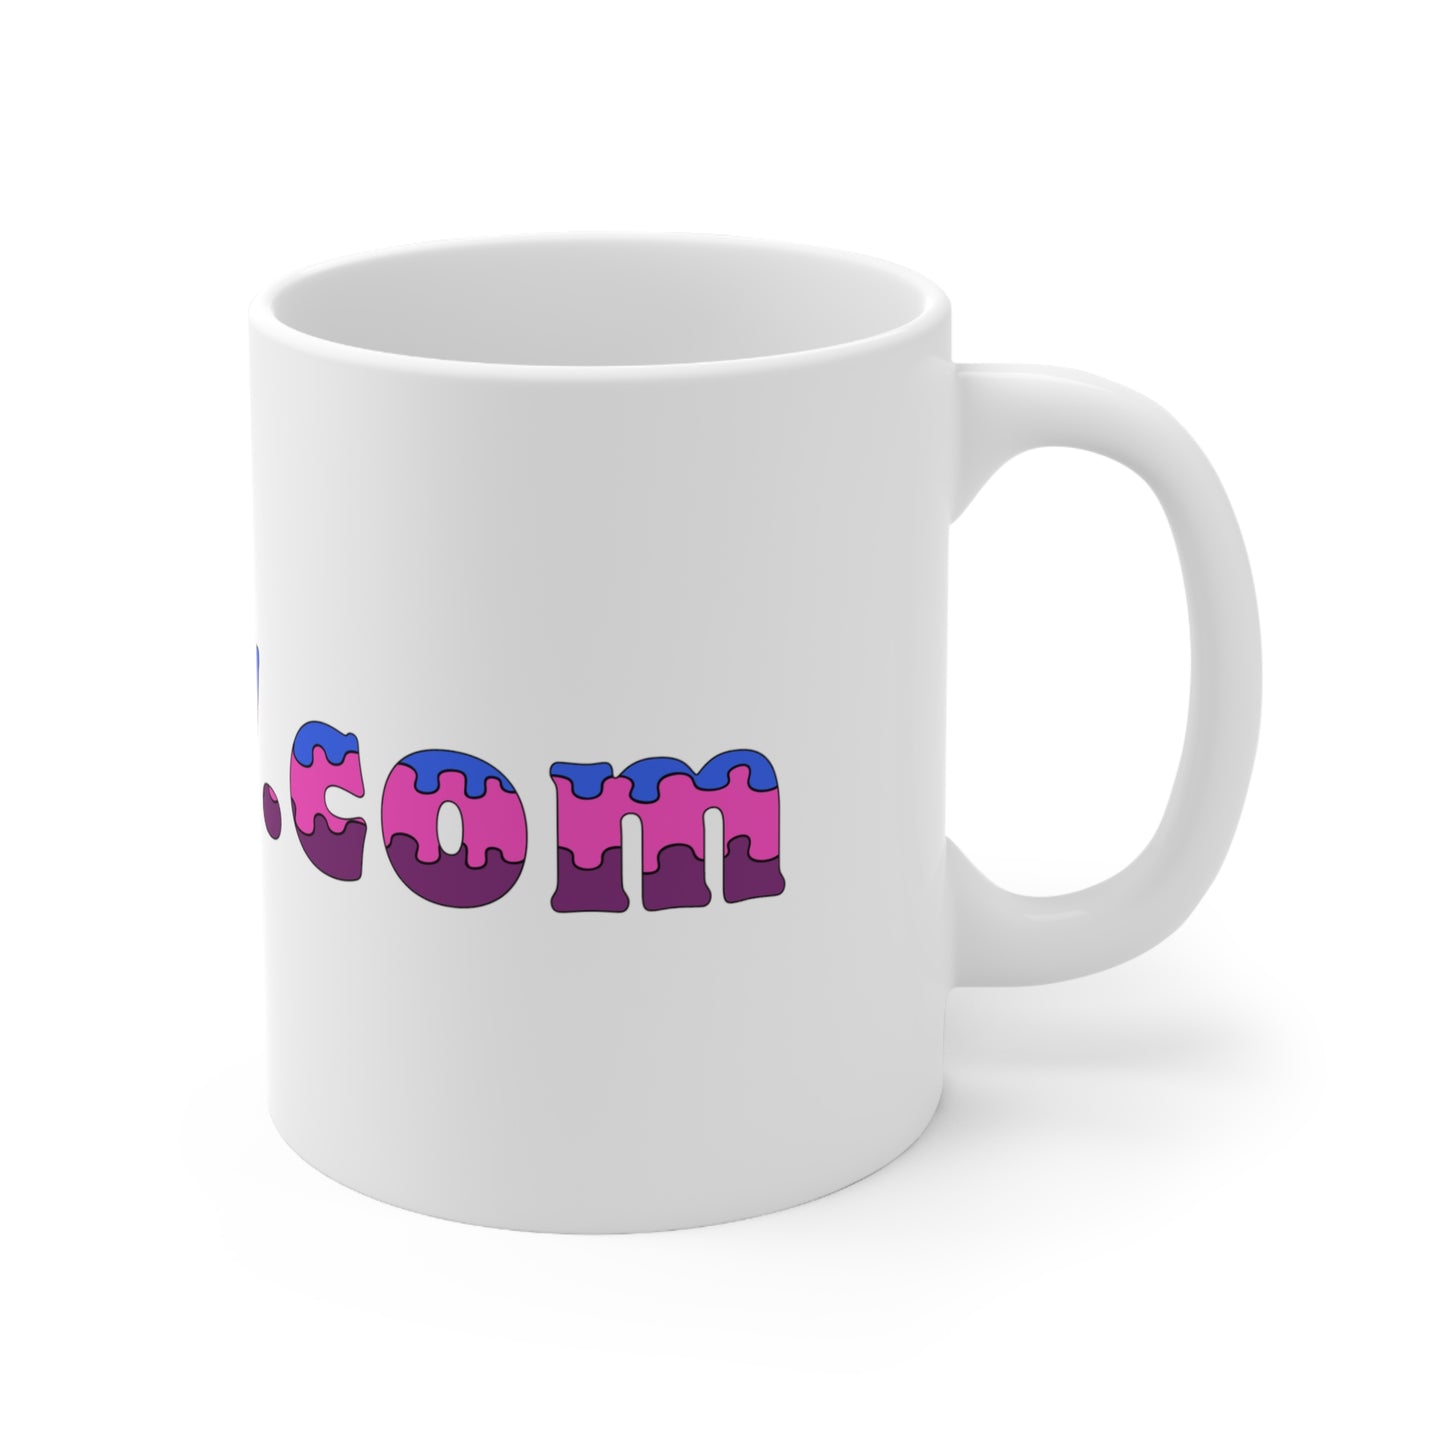 Molly.com Ceramic Mug 11oz